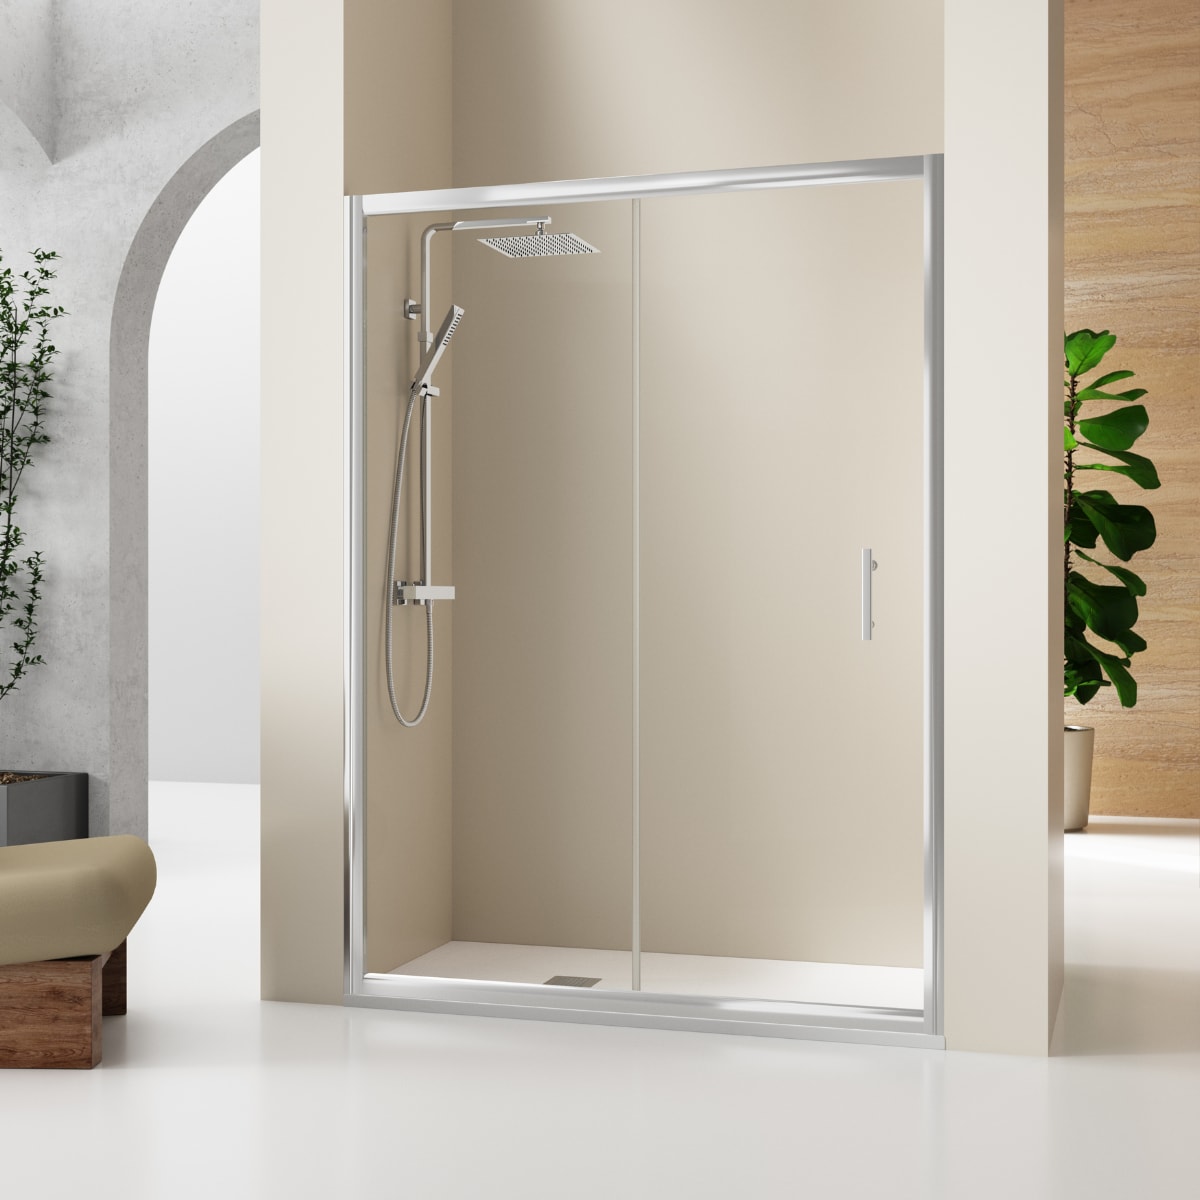 Lo nuevo en 10 piezas ganchos adhesivos transparentes, colgadores de pared  ganchos adhesivos resistentes para baño ducha puerta exterior mejora del  hogar!